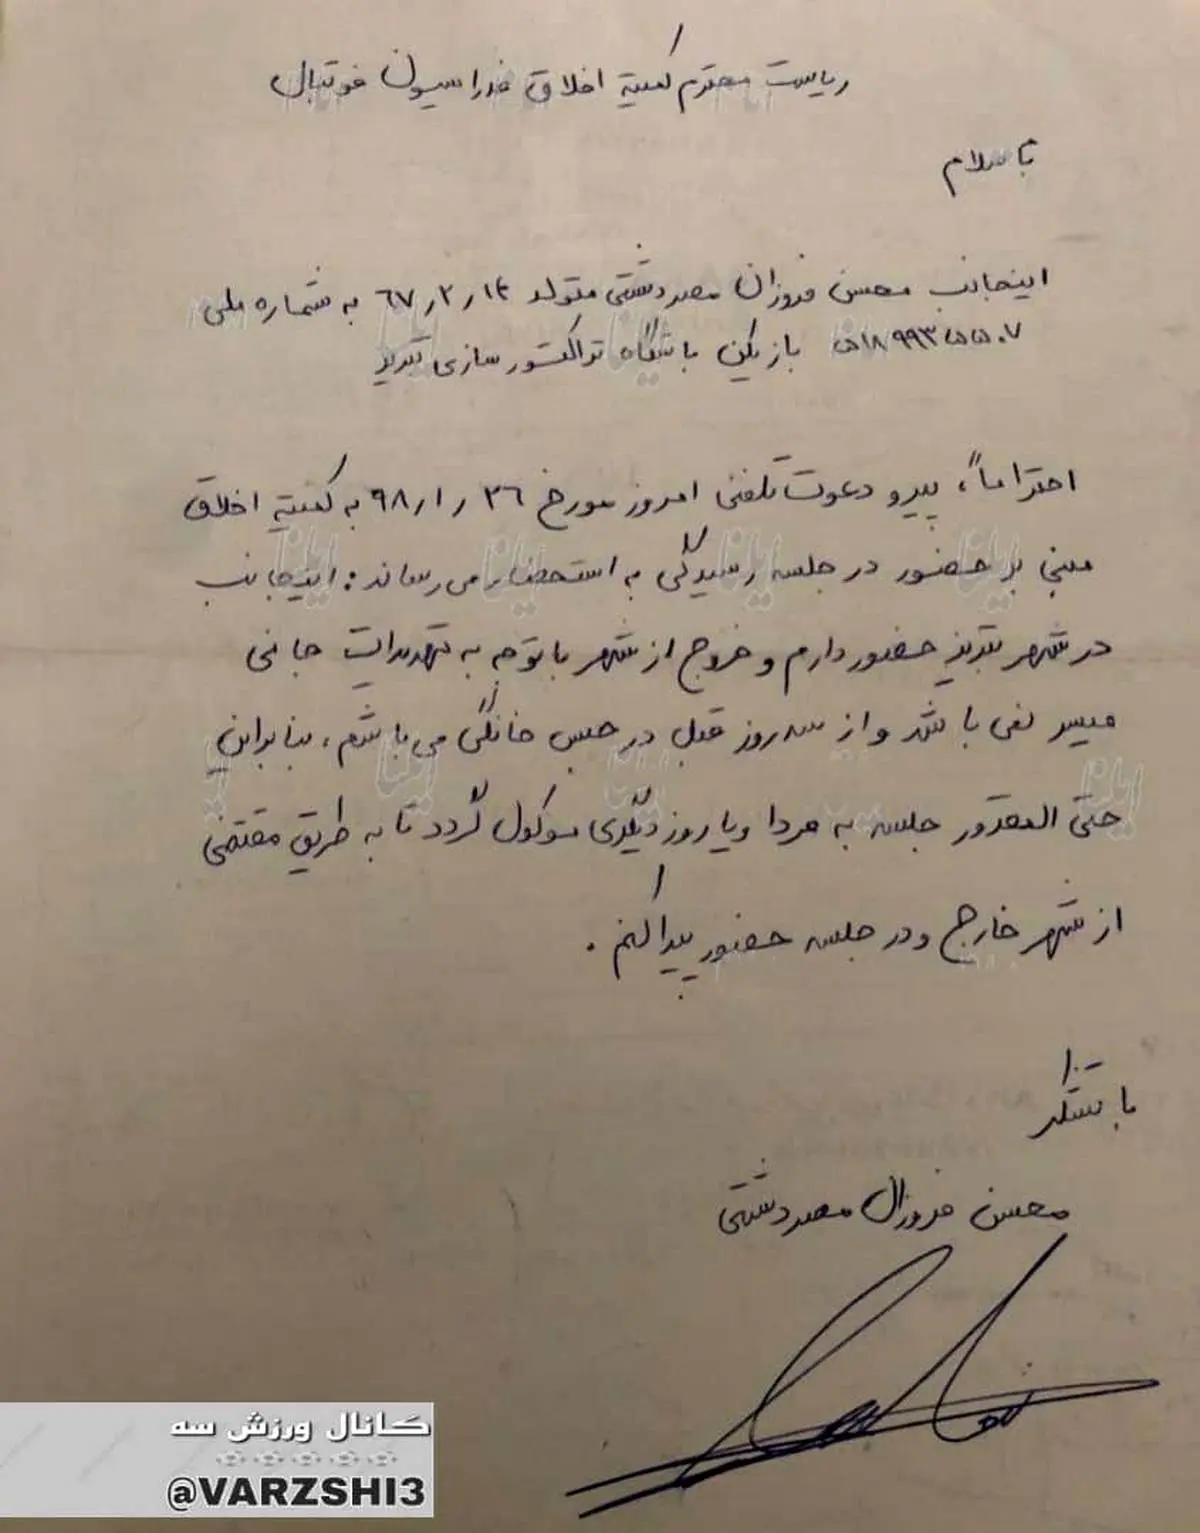 نامه محسن فروزان به کمیته انضباطی چه بود؟ + عکس